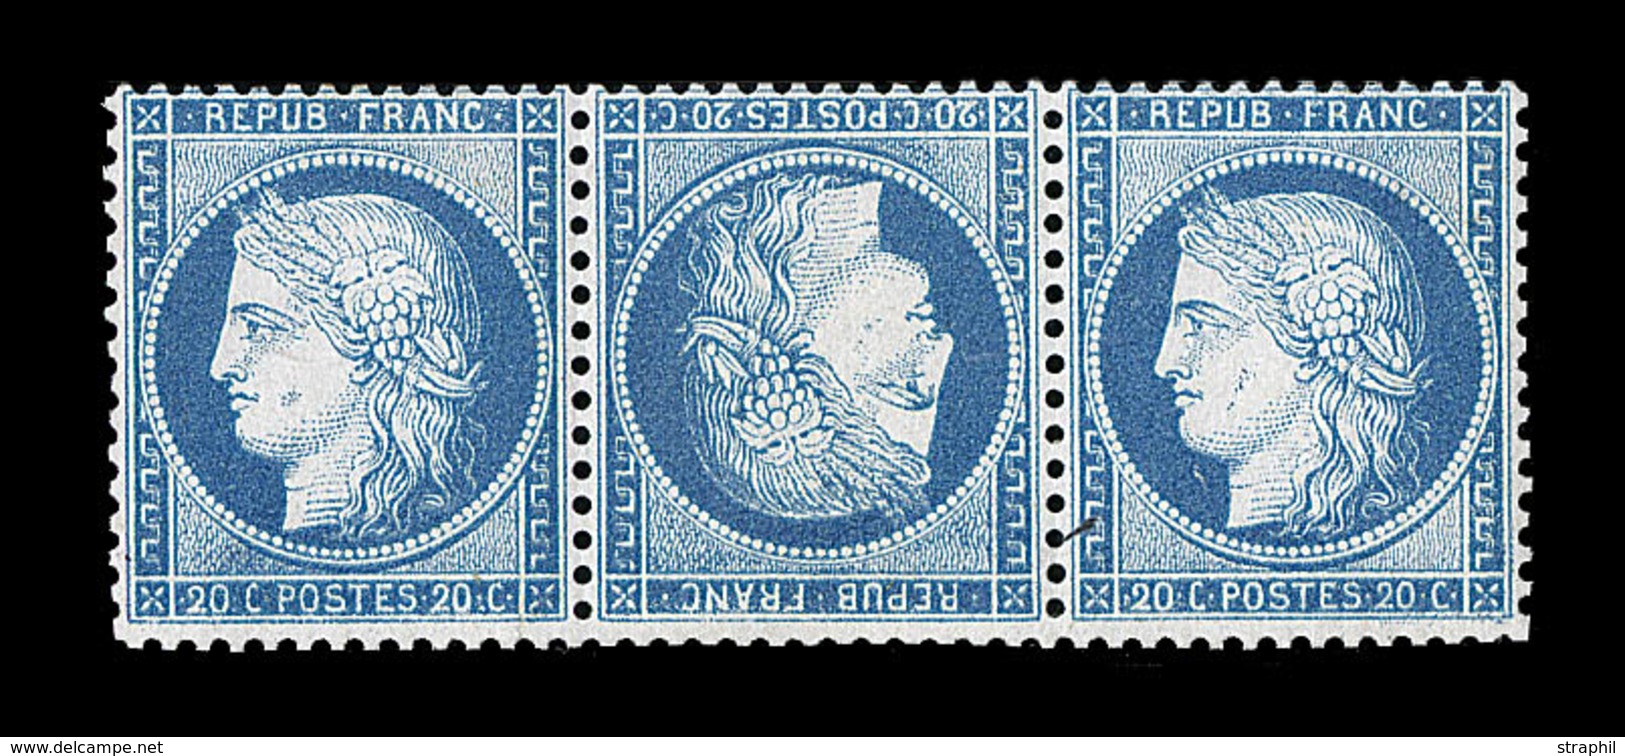 (**) SIEGE DE PARIS (1870) - (**) - N°37c - 20c Bleu - Tête Bêche - Ds Bde De 3 - Signé Brun - TB - 1870 Siege Of Paris